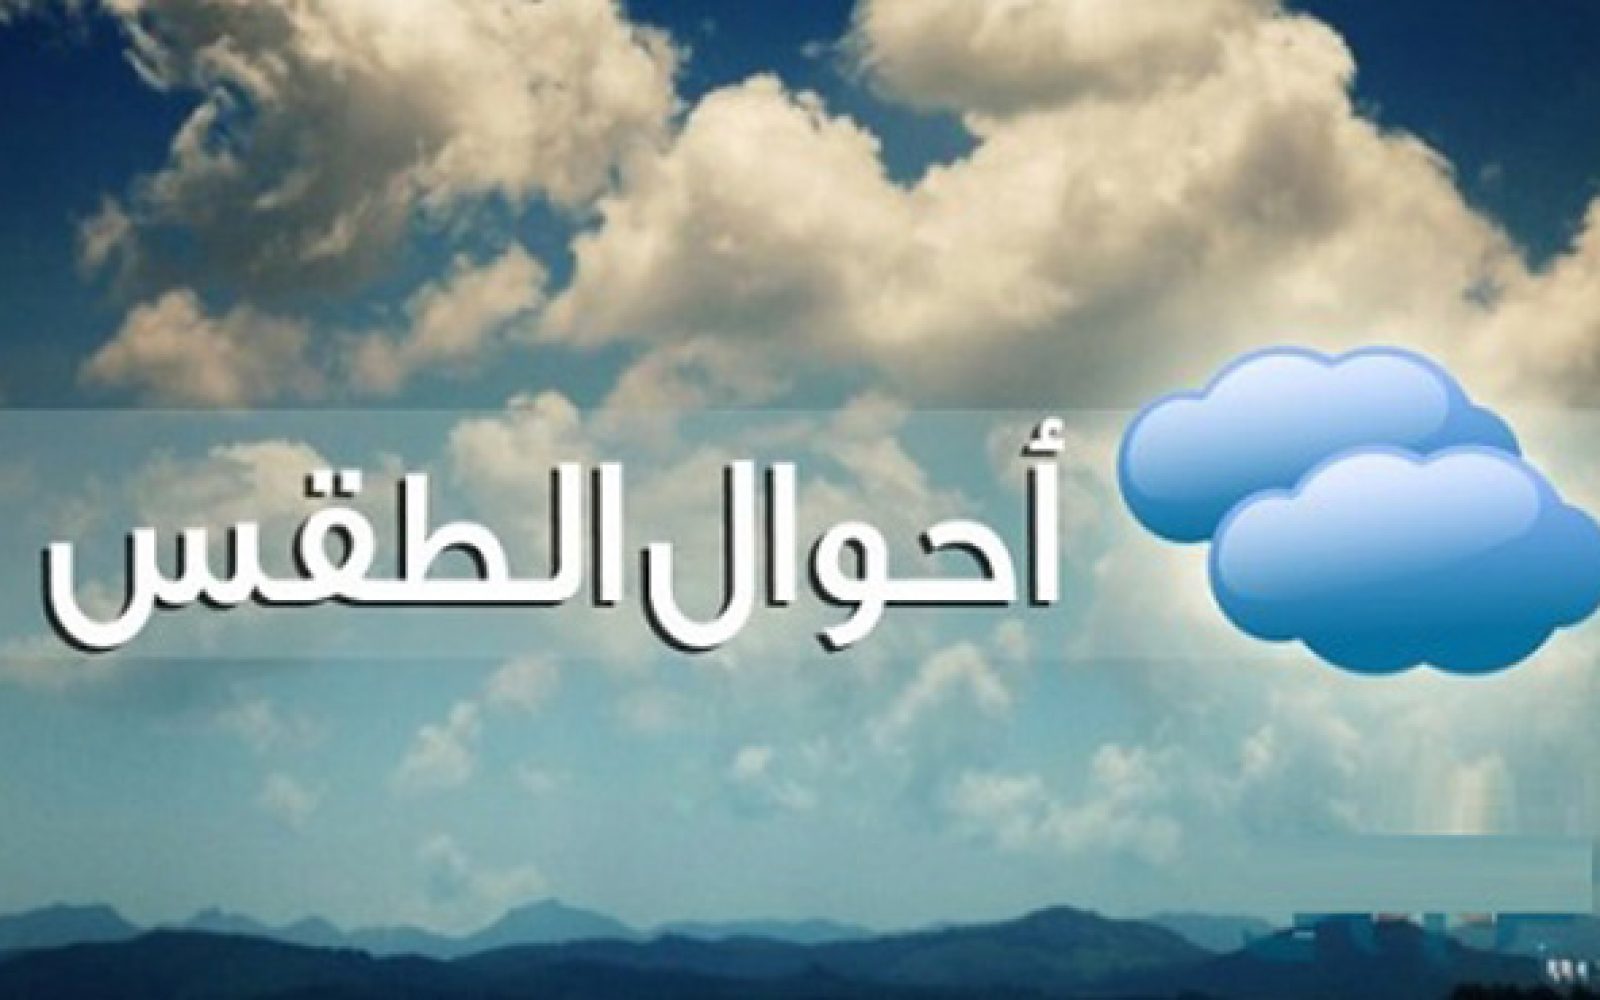 طقس غير مستقر وتوقع أمطار غزيرة على الساحل الشمالي ومتوسطة على القاهرة الكبرى